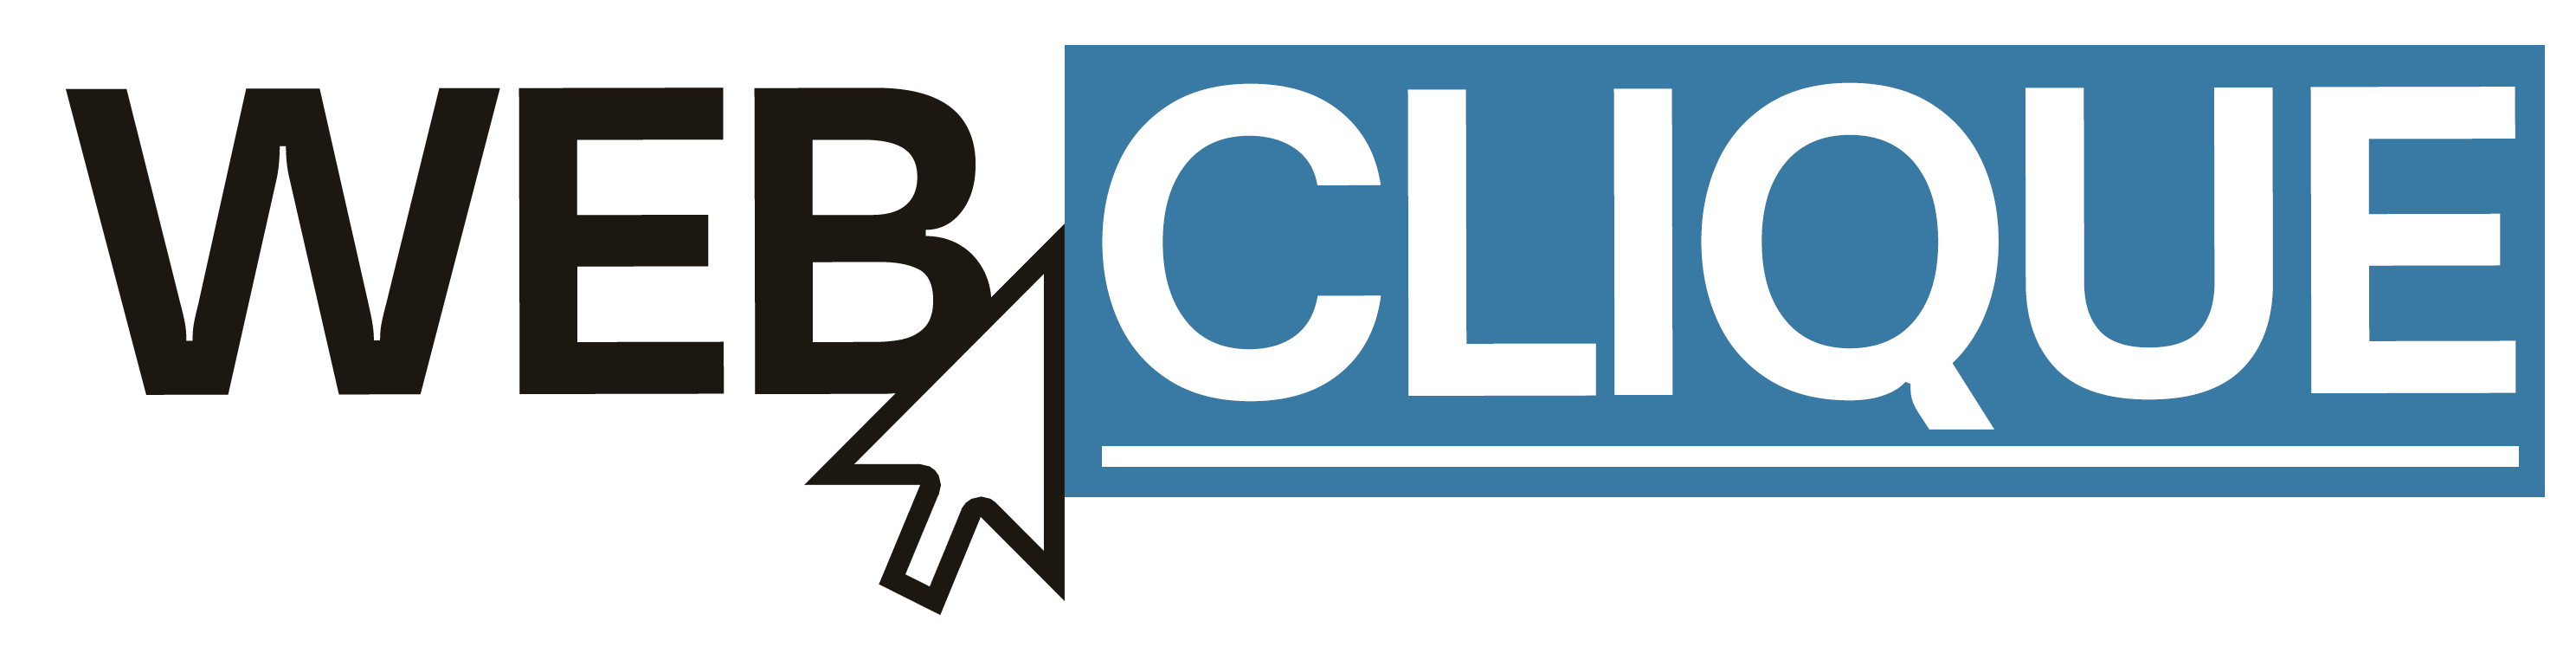 web-clique-logo-light-1